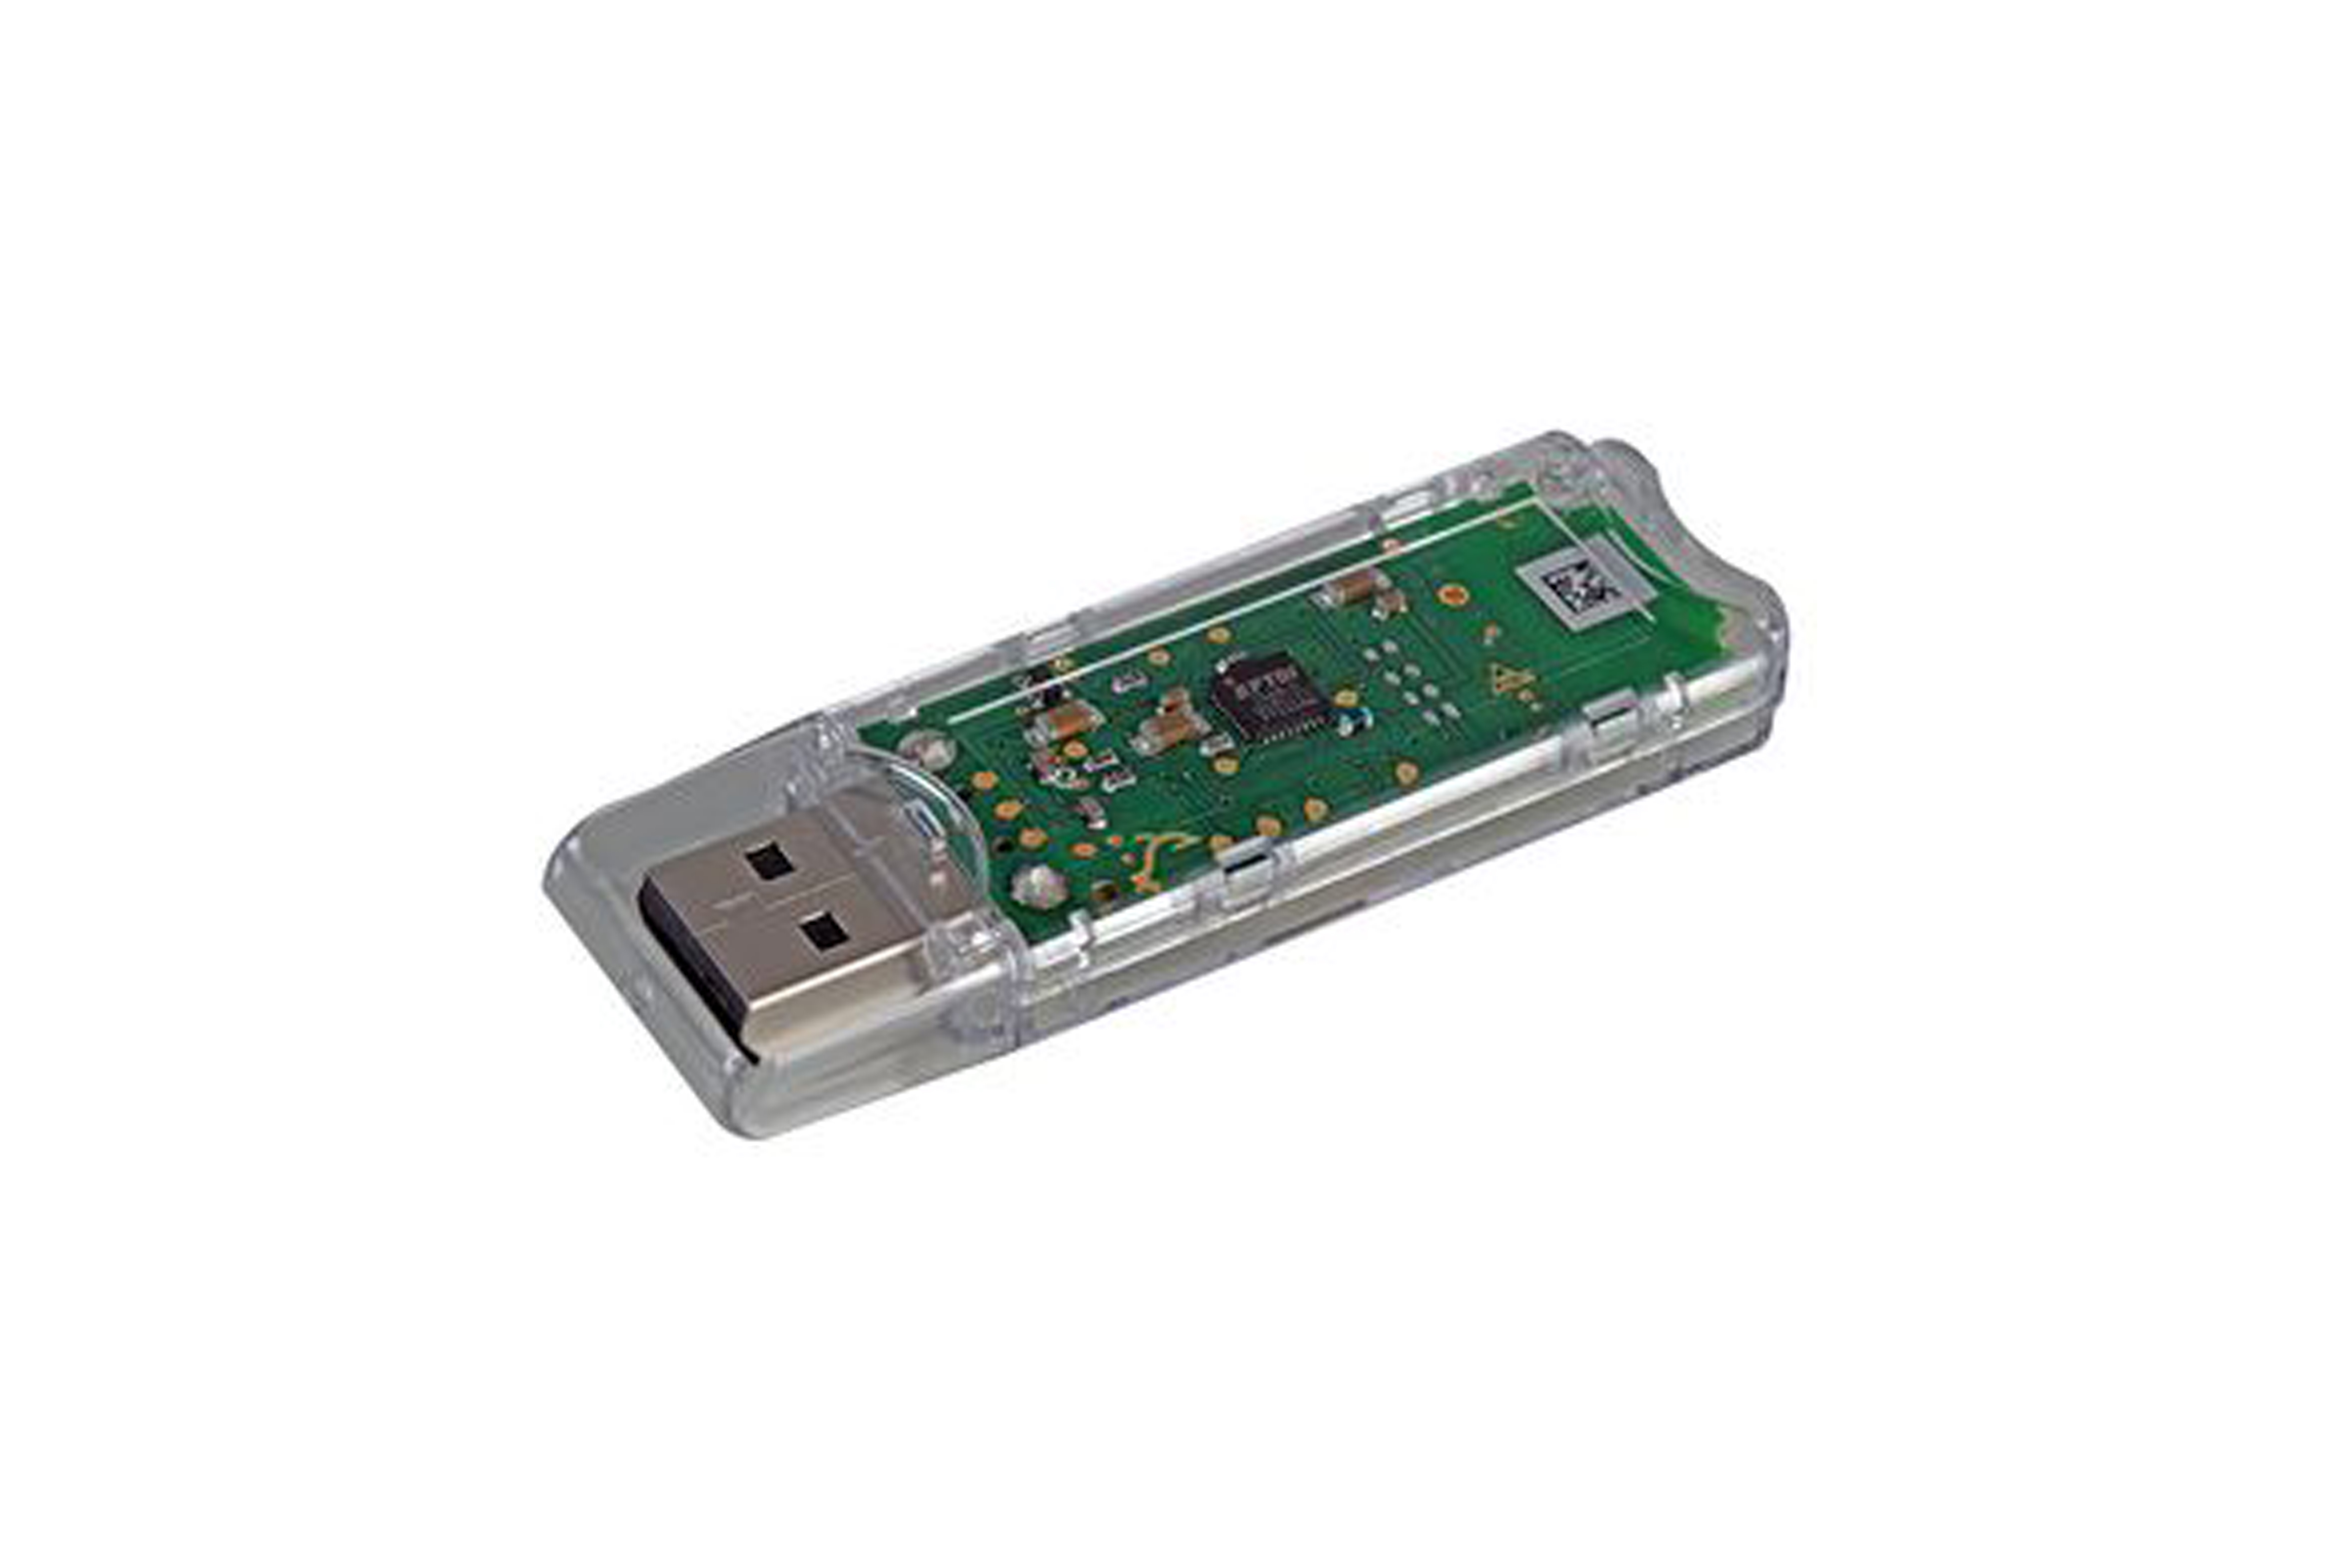 Enocean USB Gateway -  USB 300